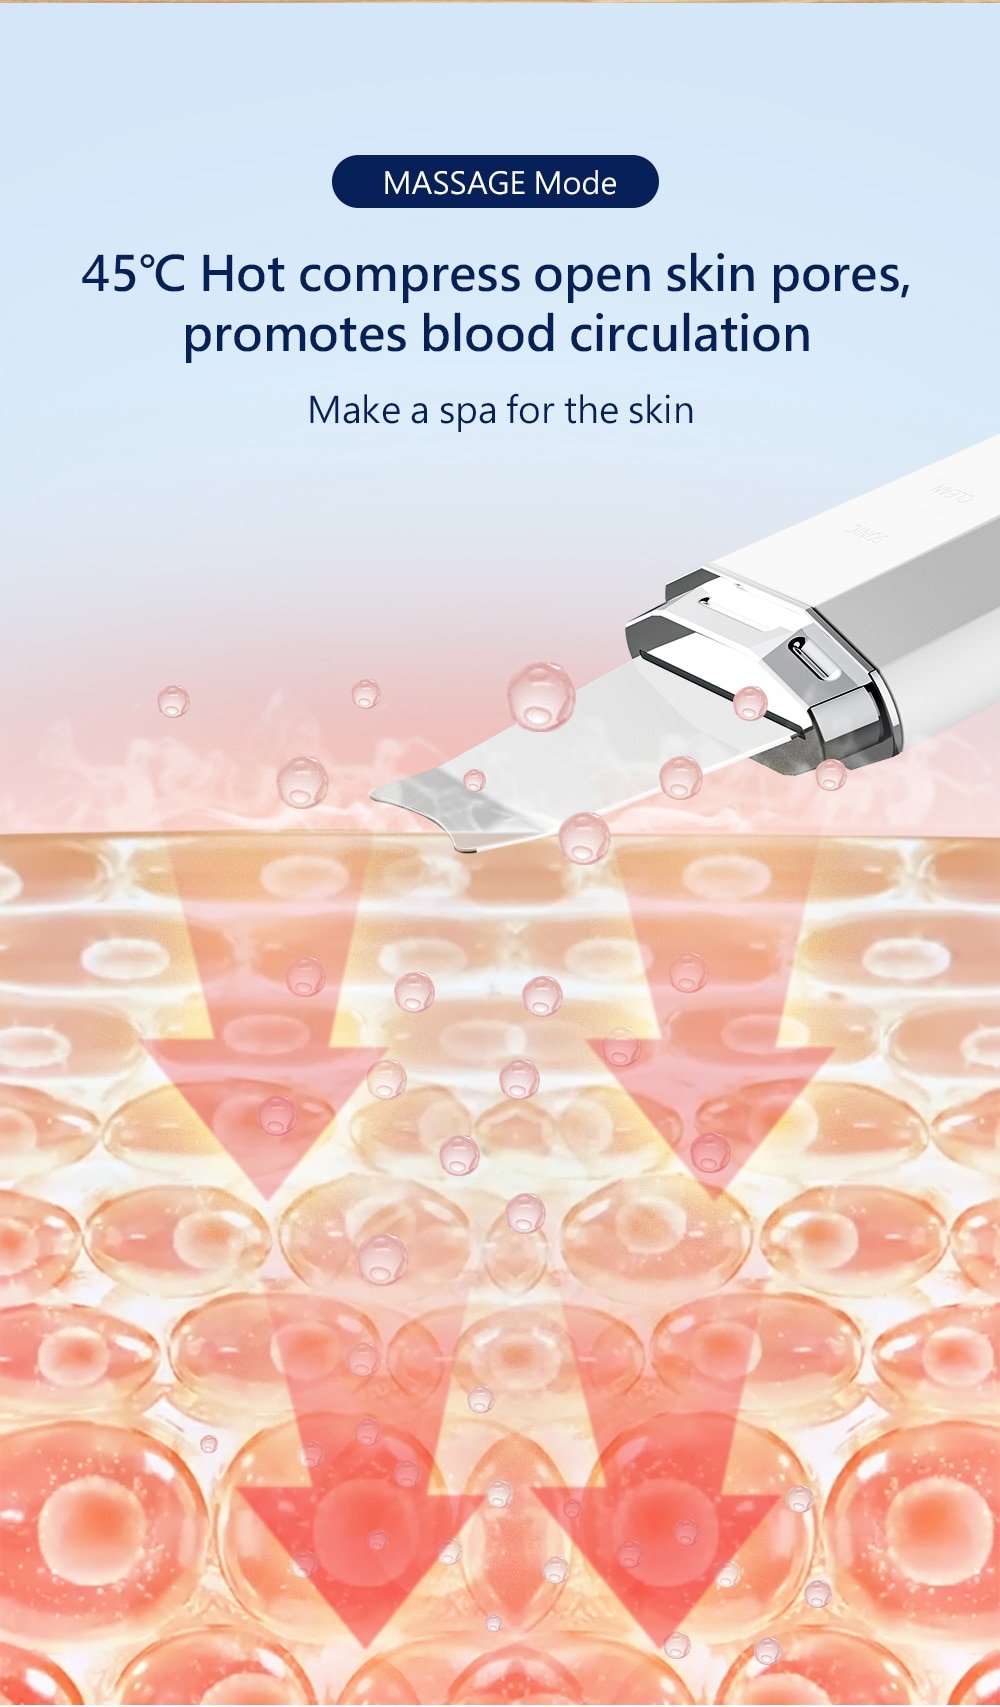 Waterproof Ultrasonic Skin Scrubber